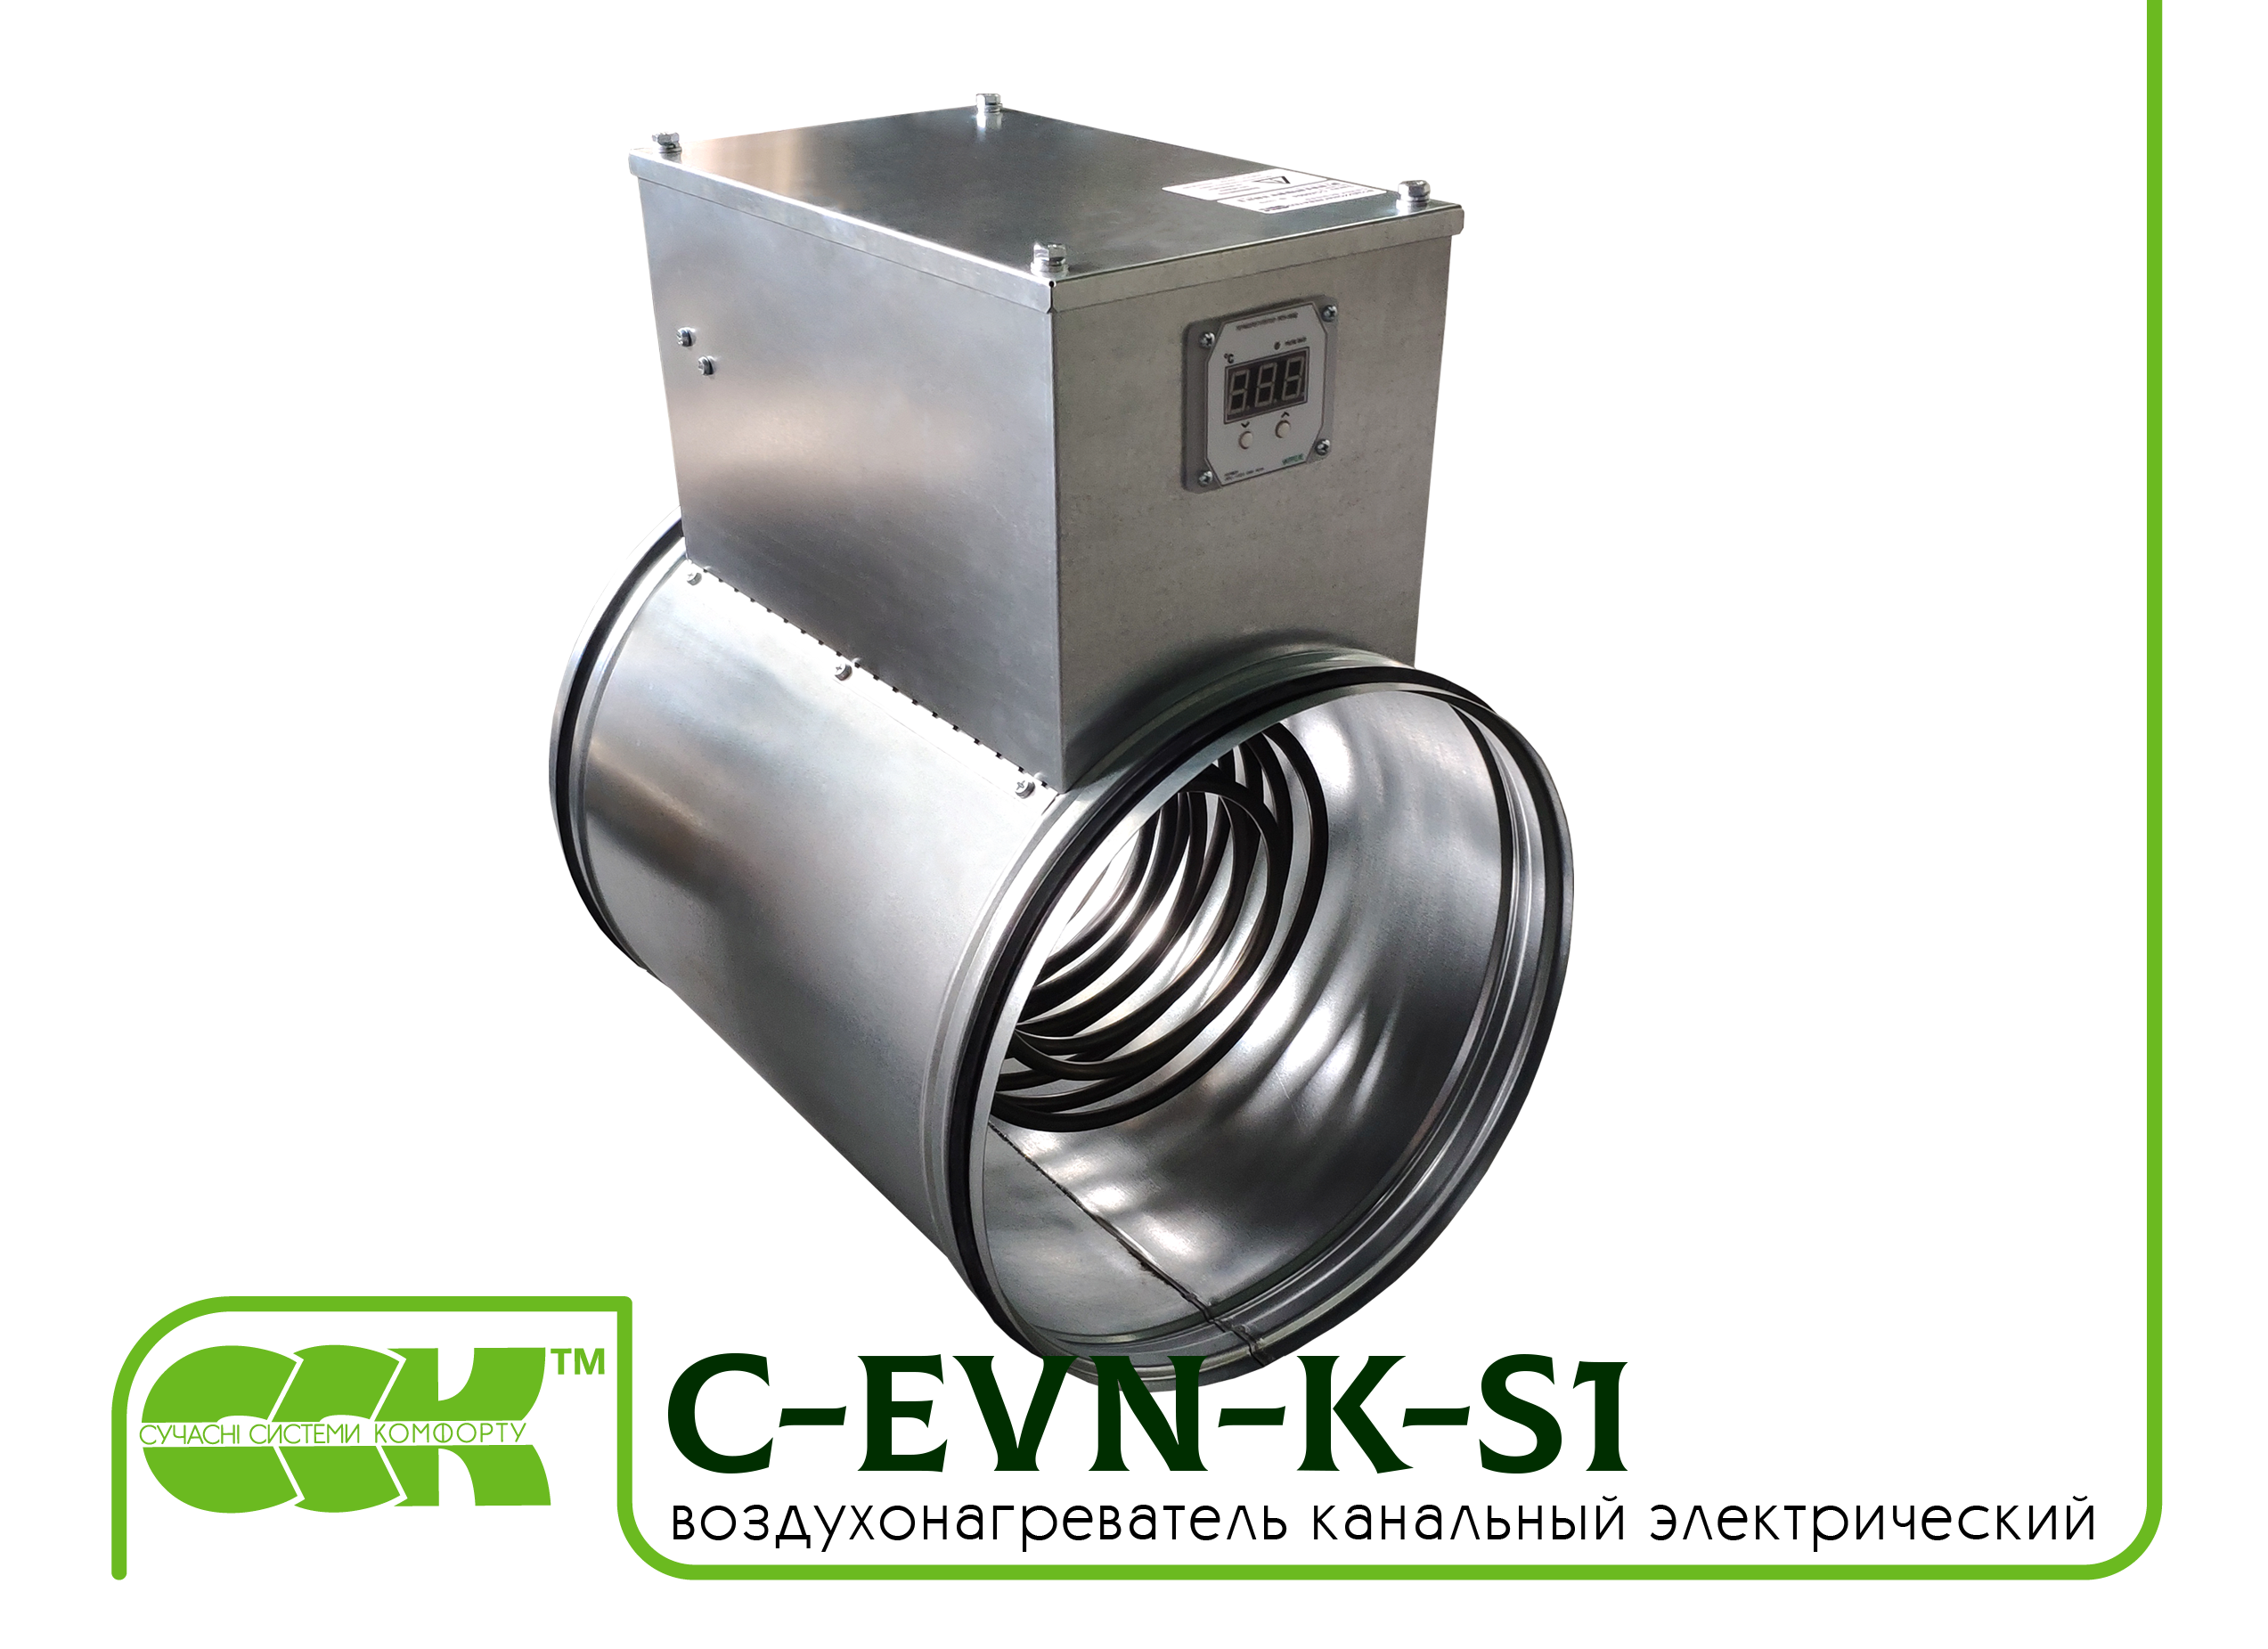 Воздухонагреватель канальный электрический для круглых каналов C-EVN-K-S1-315-12,0